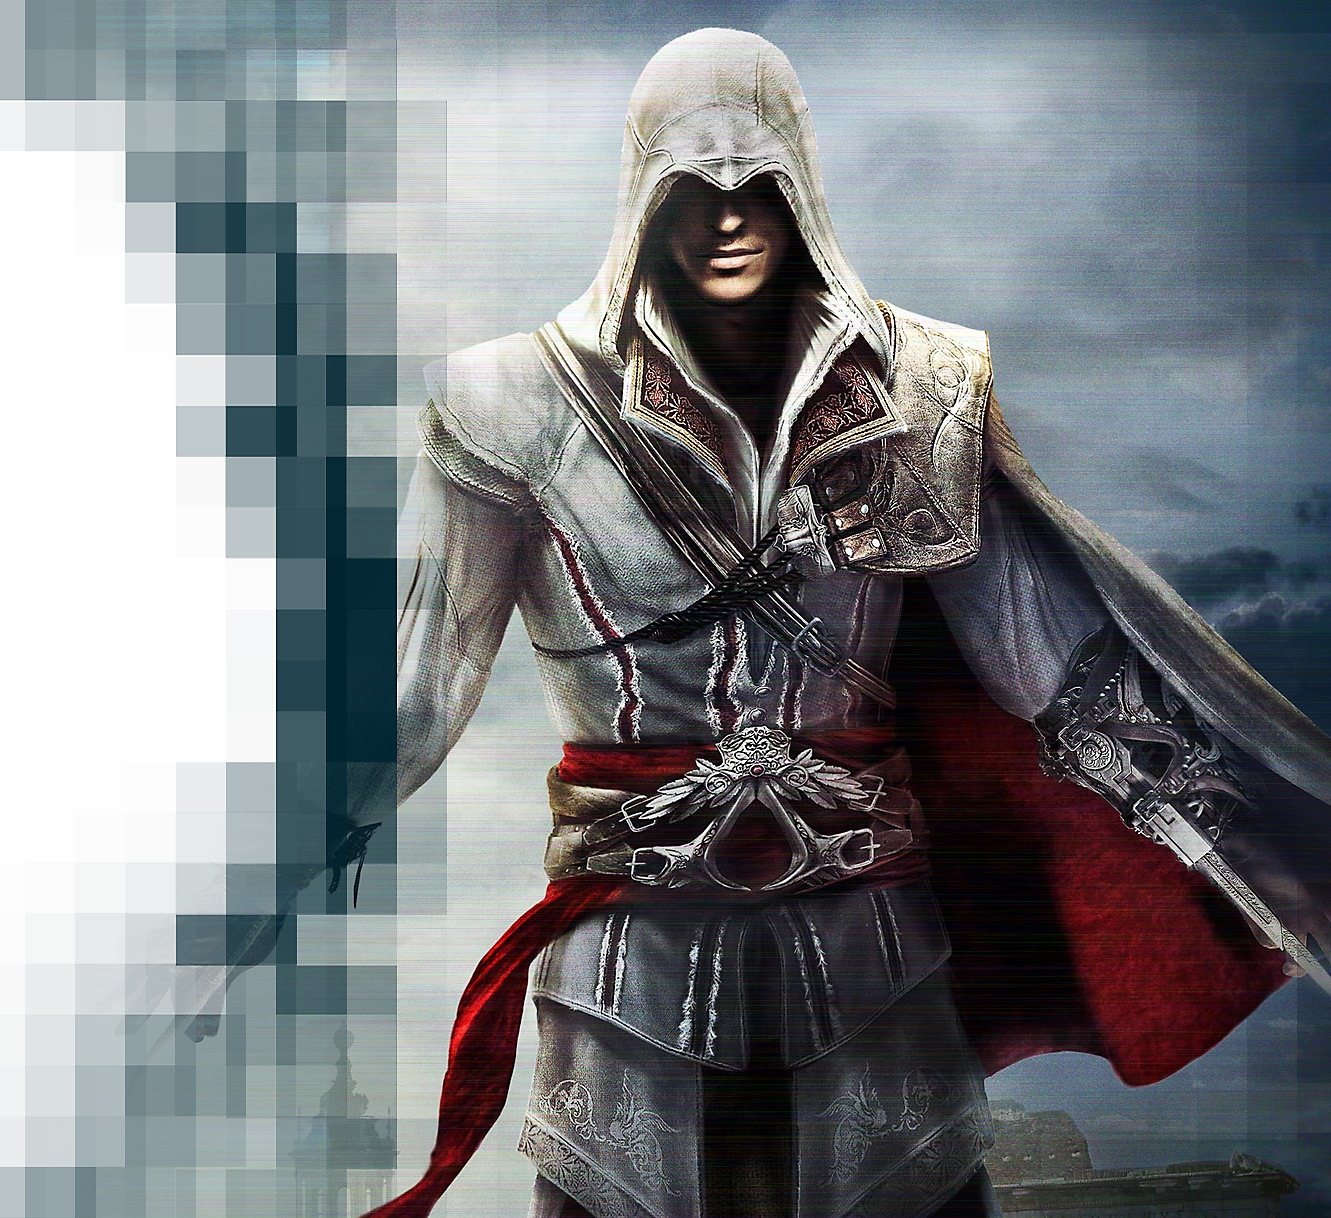 Kunstnerisk tolkning av karakteren Ezio fra Assassin's Creed: The Ezio Collection.